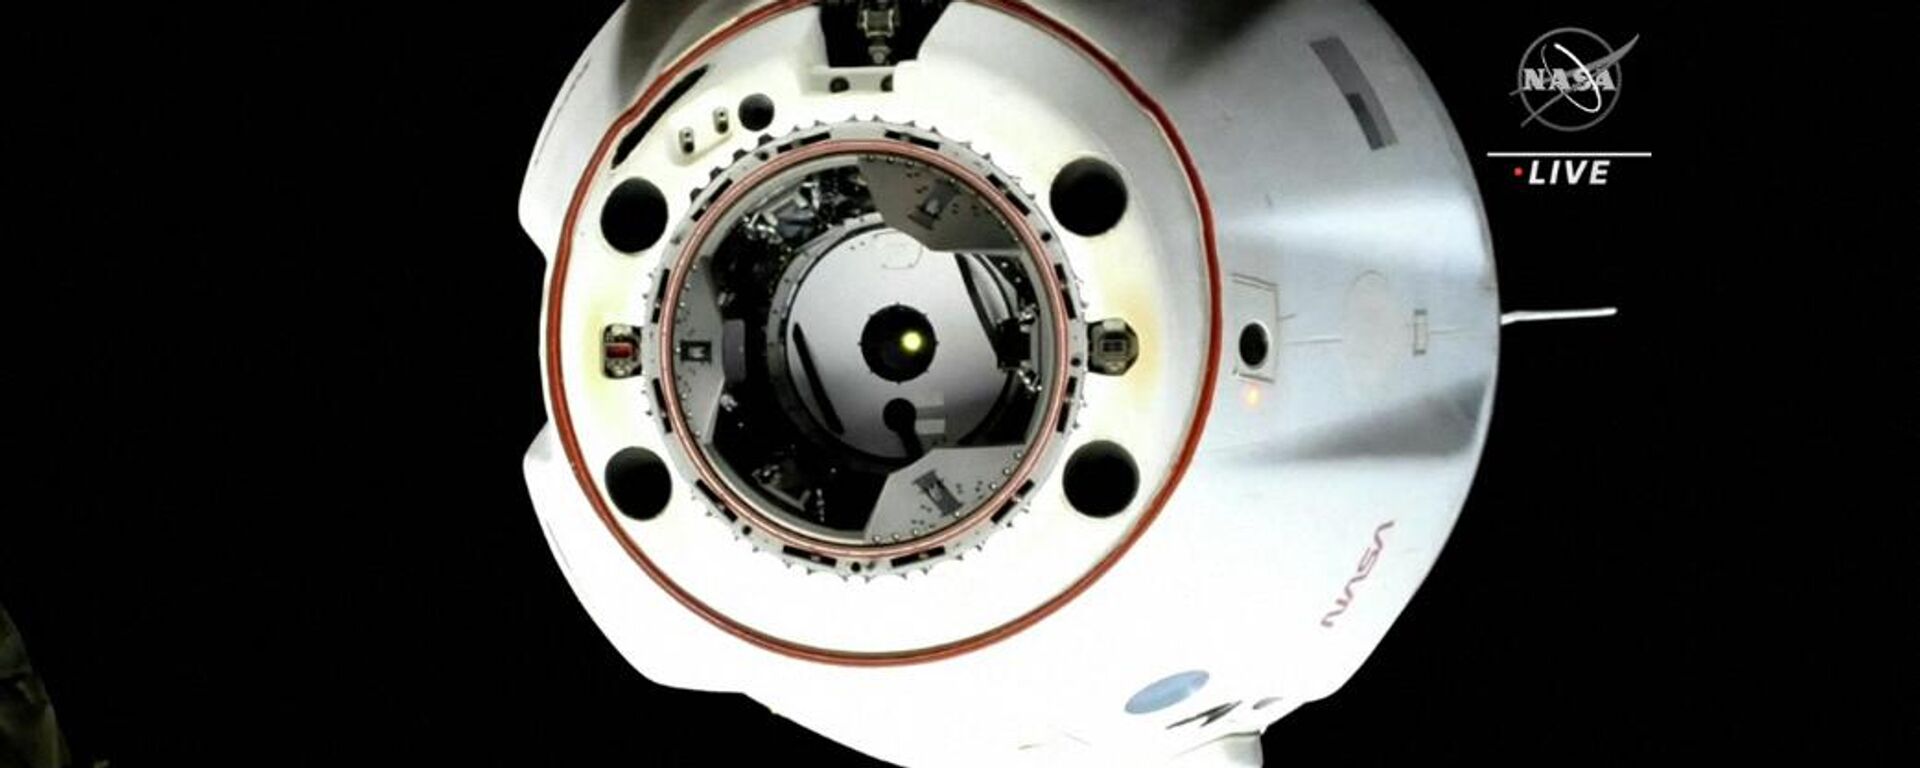 Erdvėlaivis SpaceX Dragon Endurance, atsijungęs nuo priekinio Harmony modulio prievado - Sputnik Lietuva, 1920, 11.05.2022